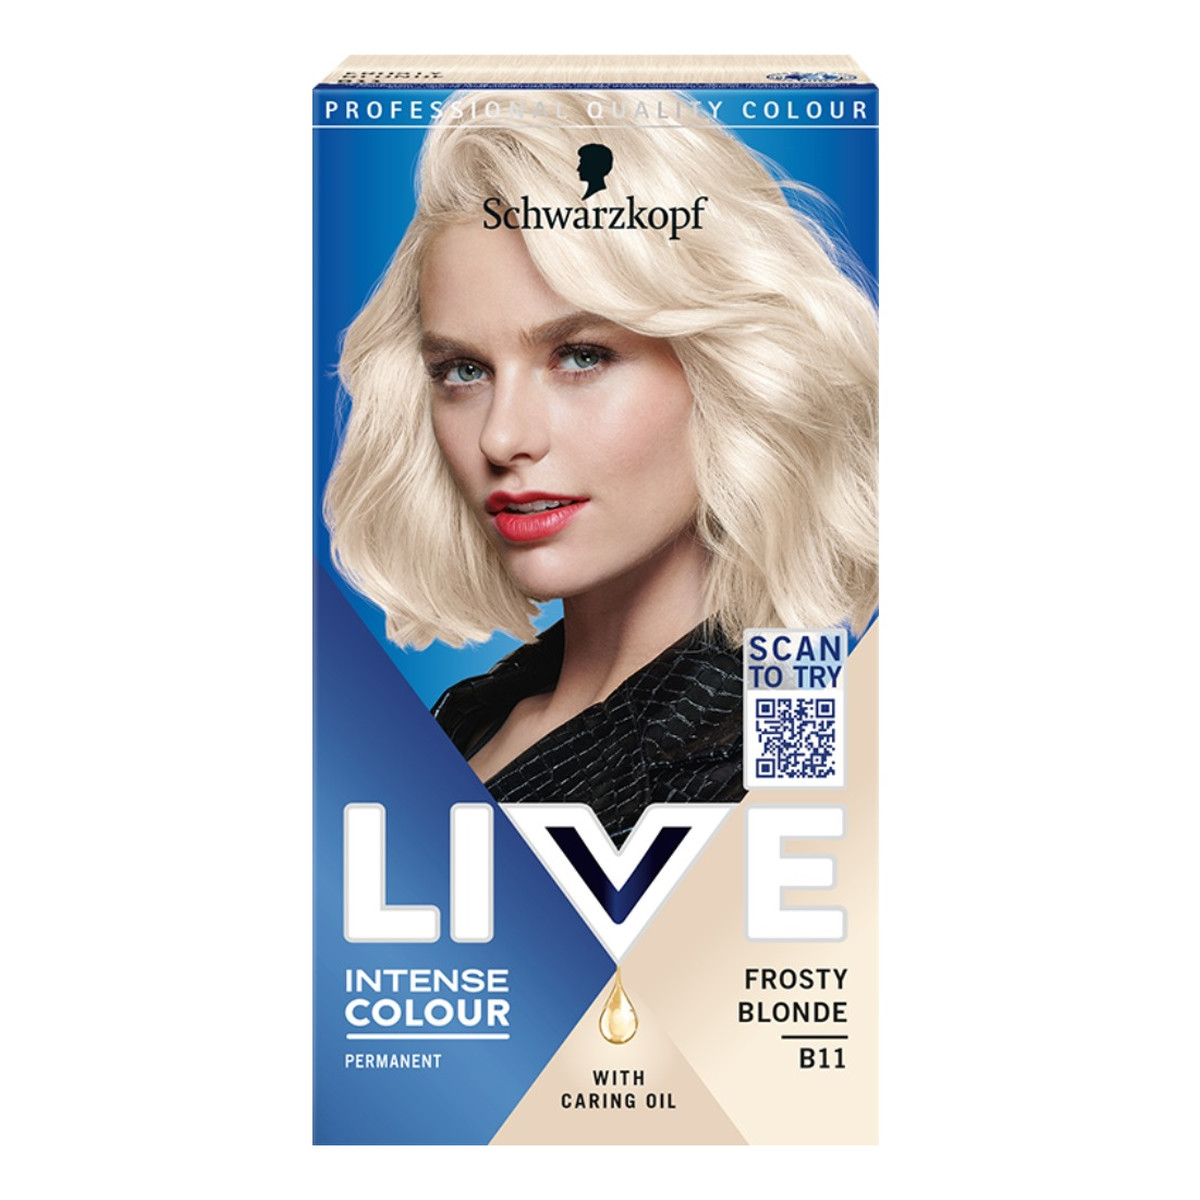 Schwarzkopf Live intense colour farba do włosów b11 frosty blonde